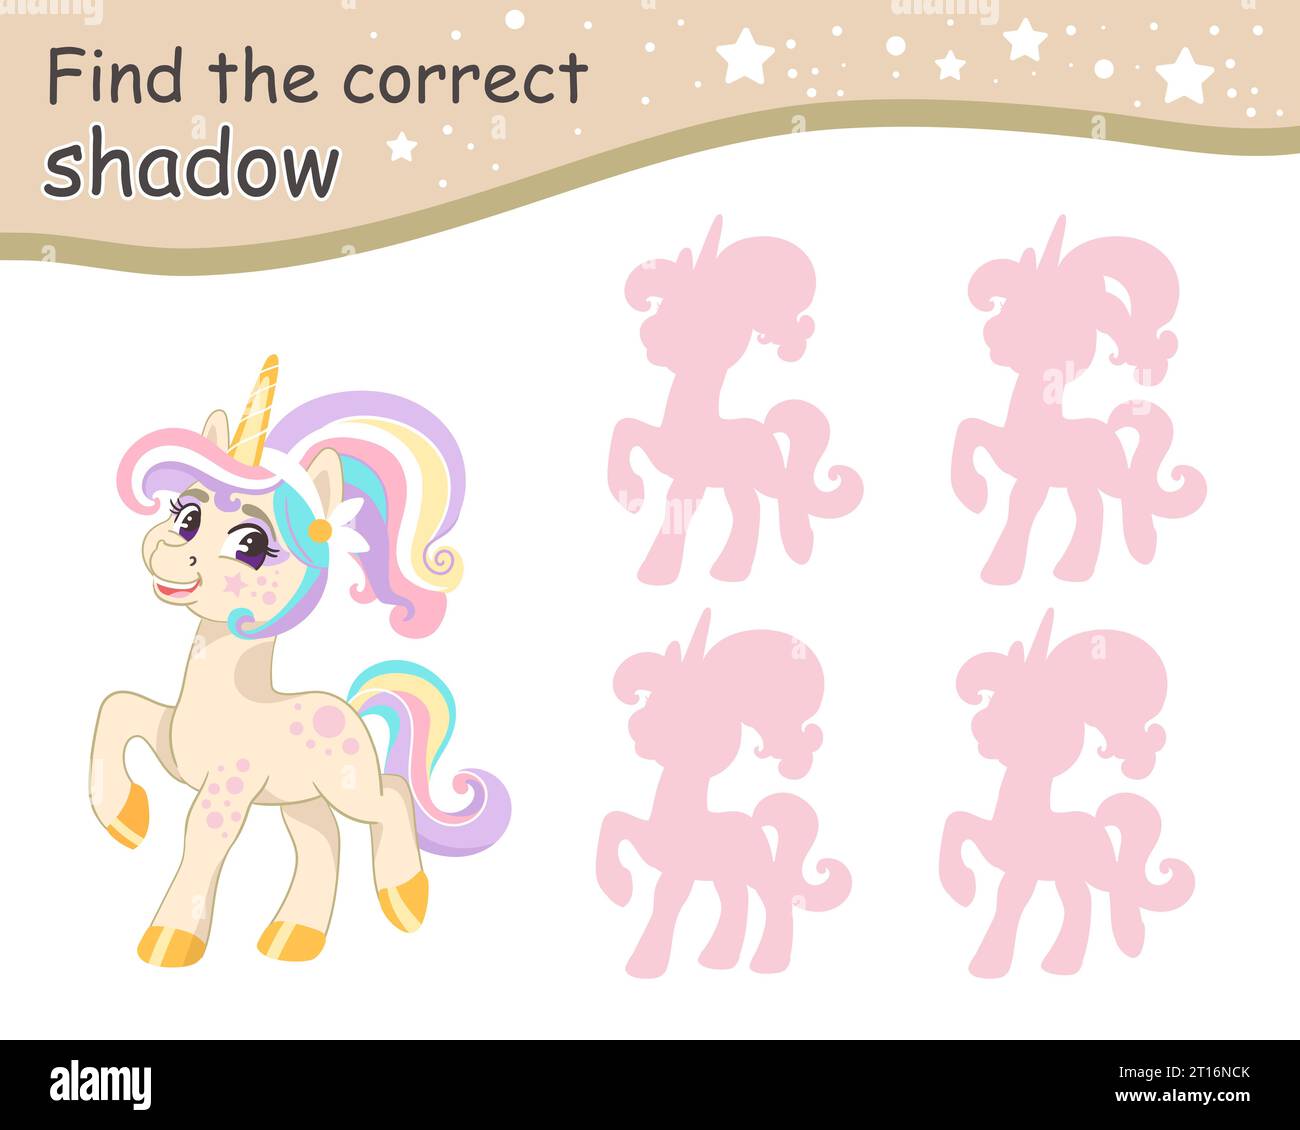 Suchen Sie den richtigen Schatten. Niedliches Cartoon-Einhorn mit Pferdeschwanz-Frisur. Pädagogisches Matching-Spiel für Kinder mit Zeichentrickfigur. Aktivität, Logik Stock Vektor